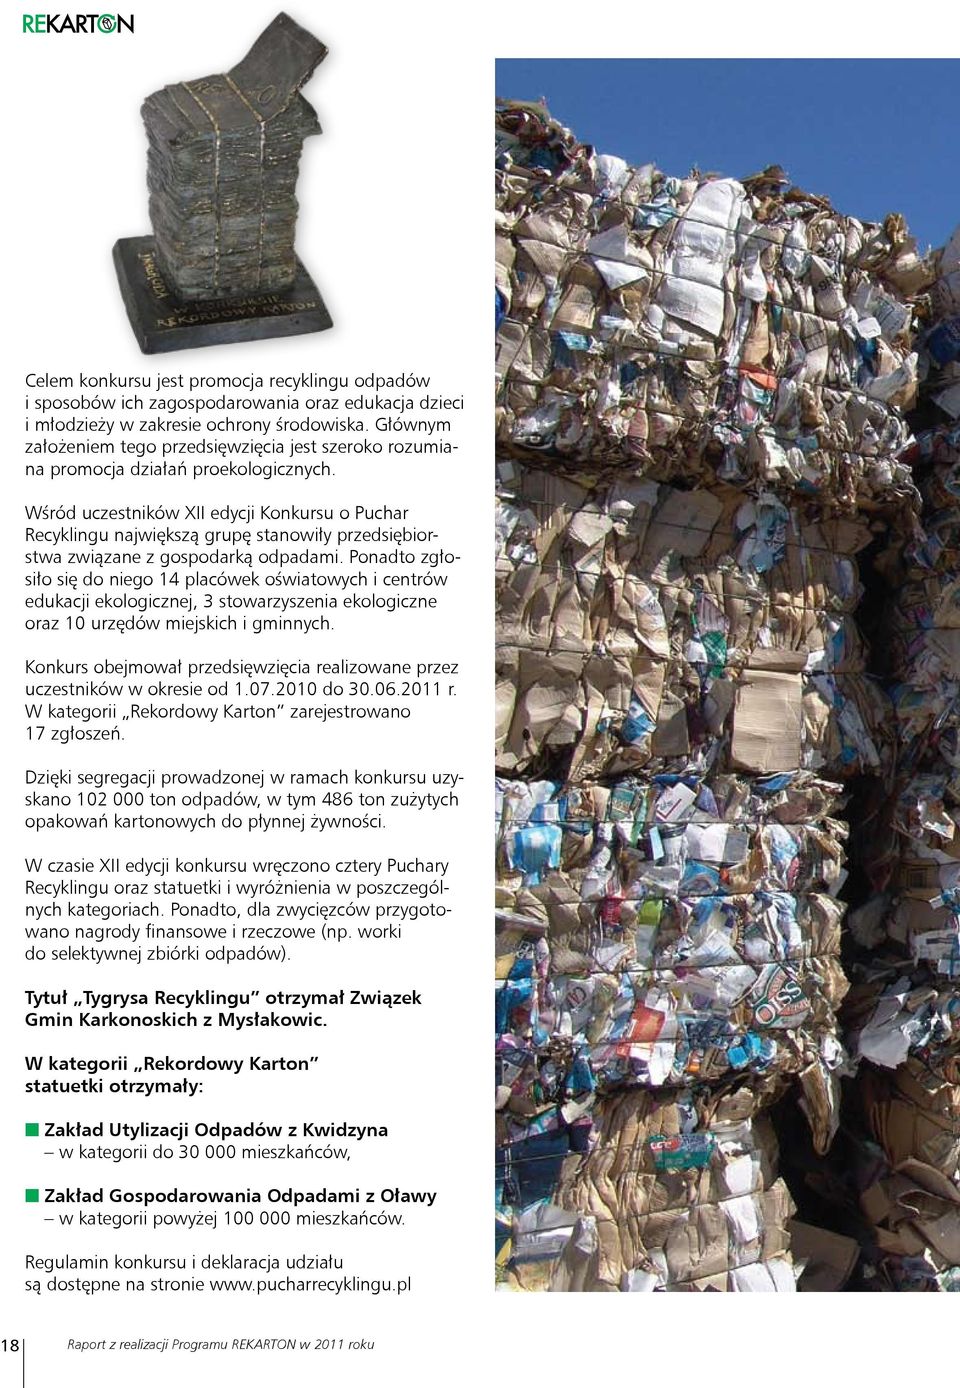 Wśród uczestników XII edycji Konkursu o Puchar Recyklingu największą grupę stanowiły przedsiębiorstwa związane z gospodarką odpadami.